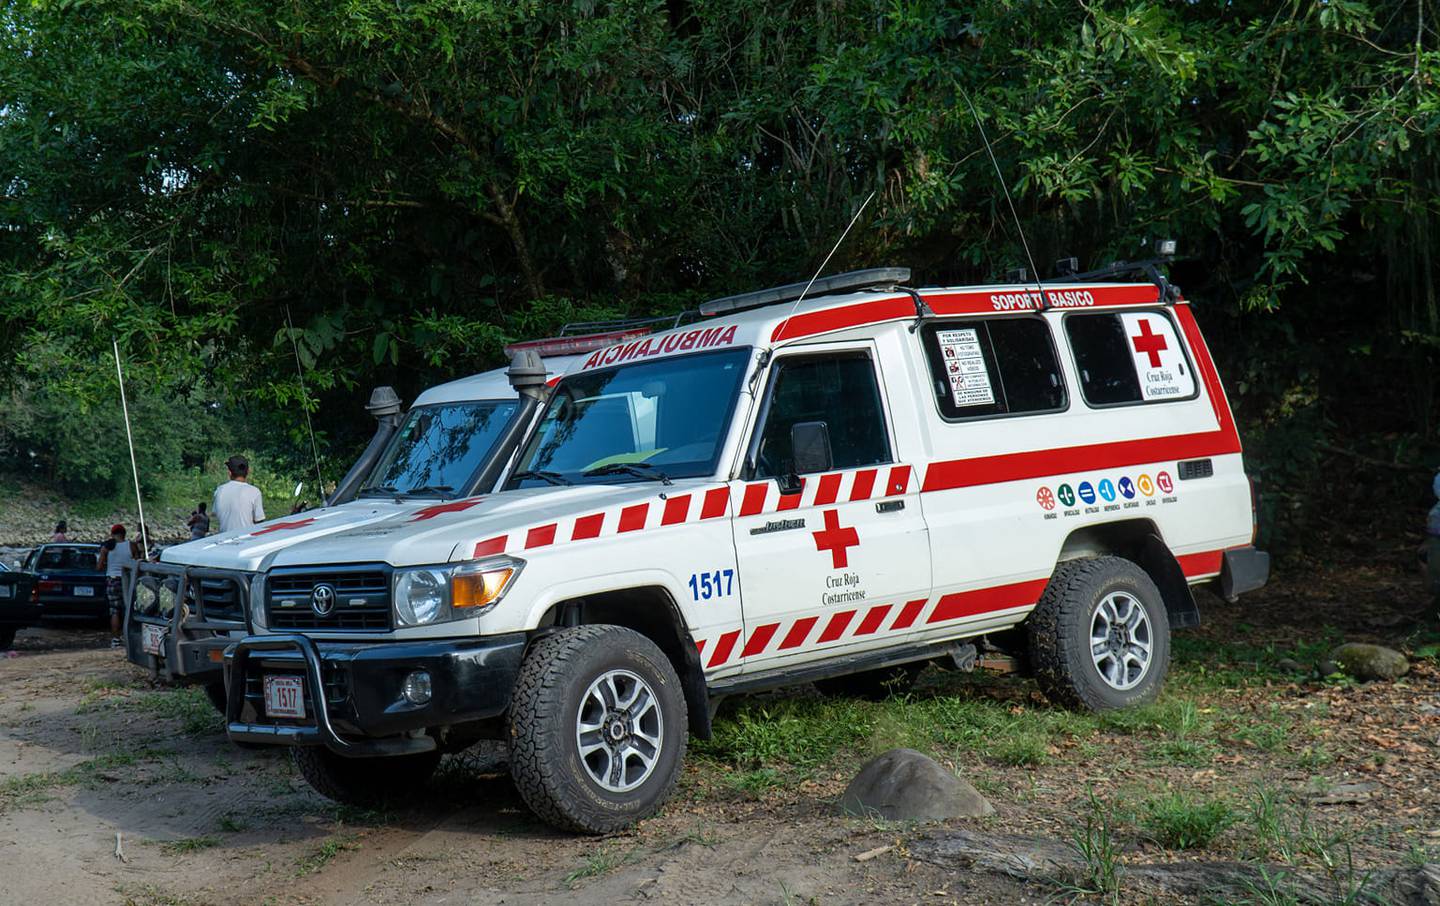 Cuando los socorristas llegaron hallaron al conductor de 40 años sin signos vitales. Foto ilustrativa: Cortesía Cruz Roja.